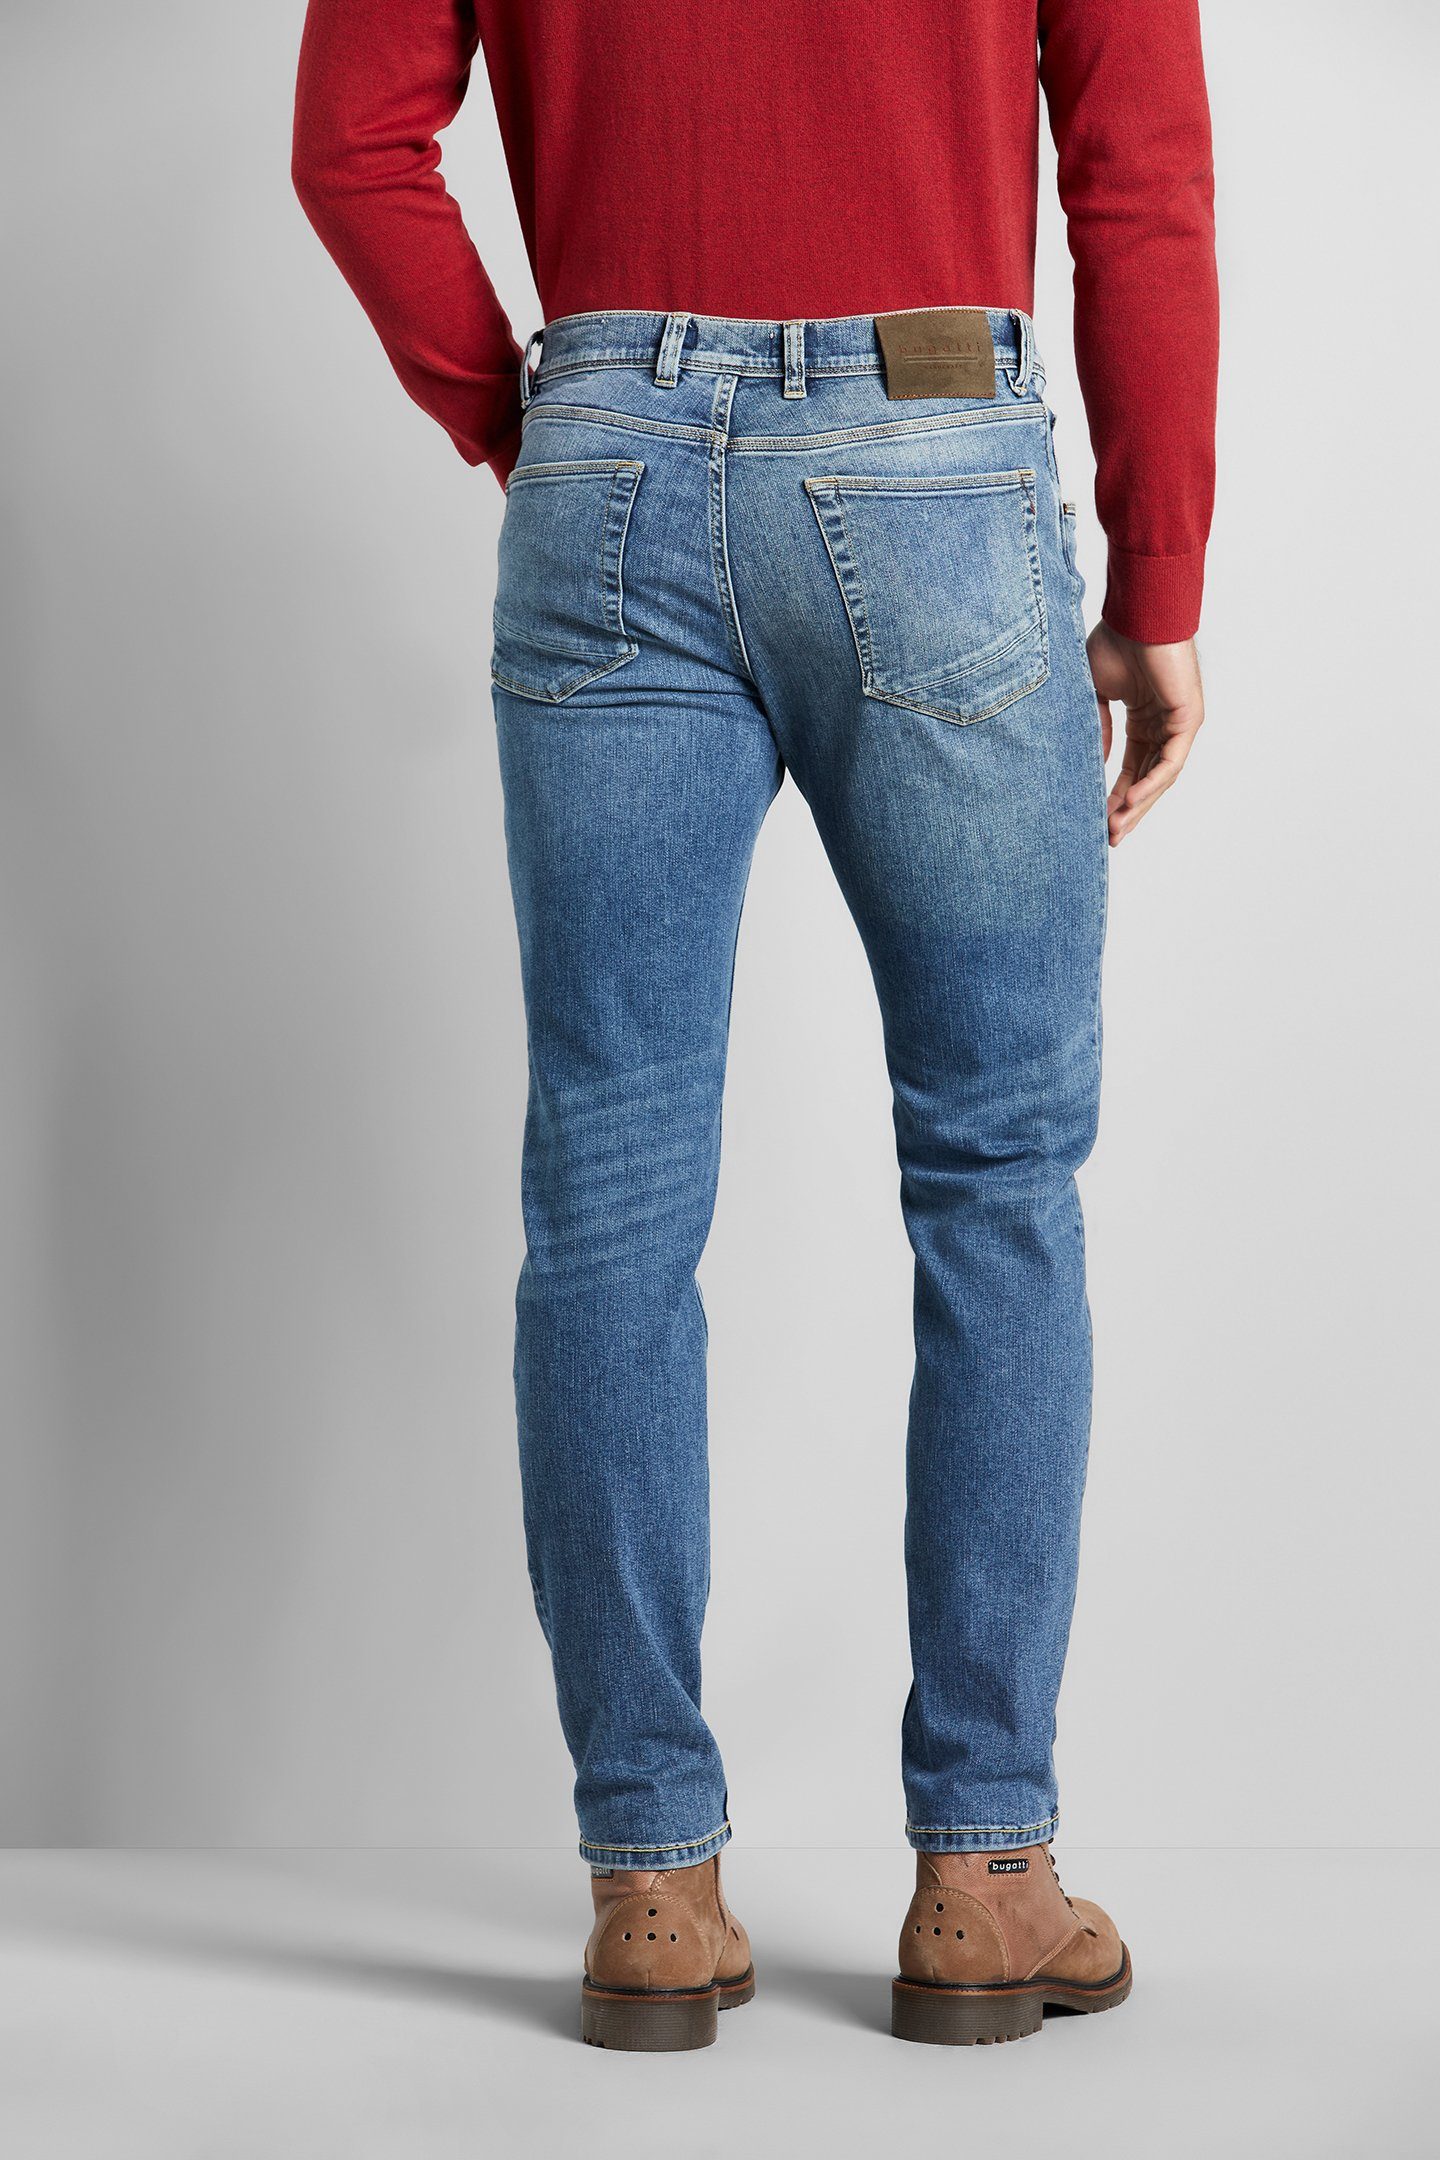 bugatti 5-Pocket-Jeans Used Wash im Look blau